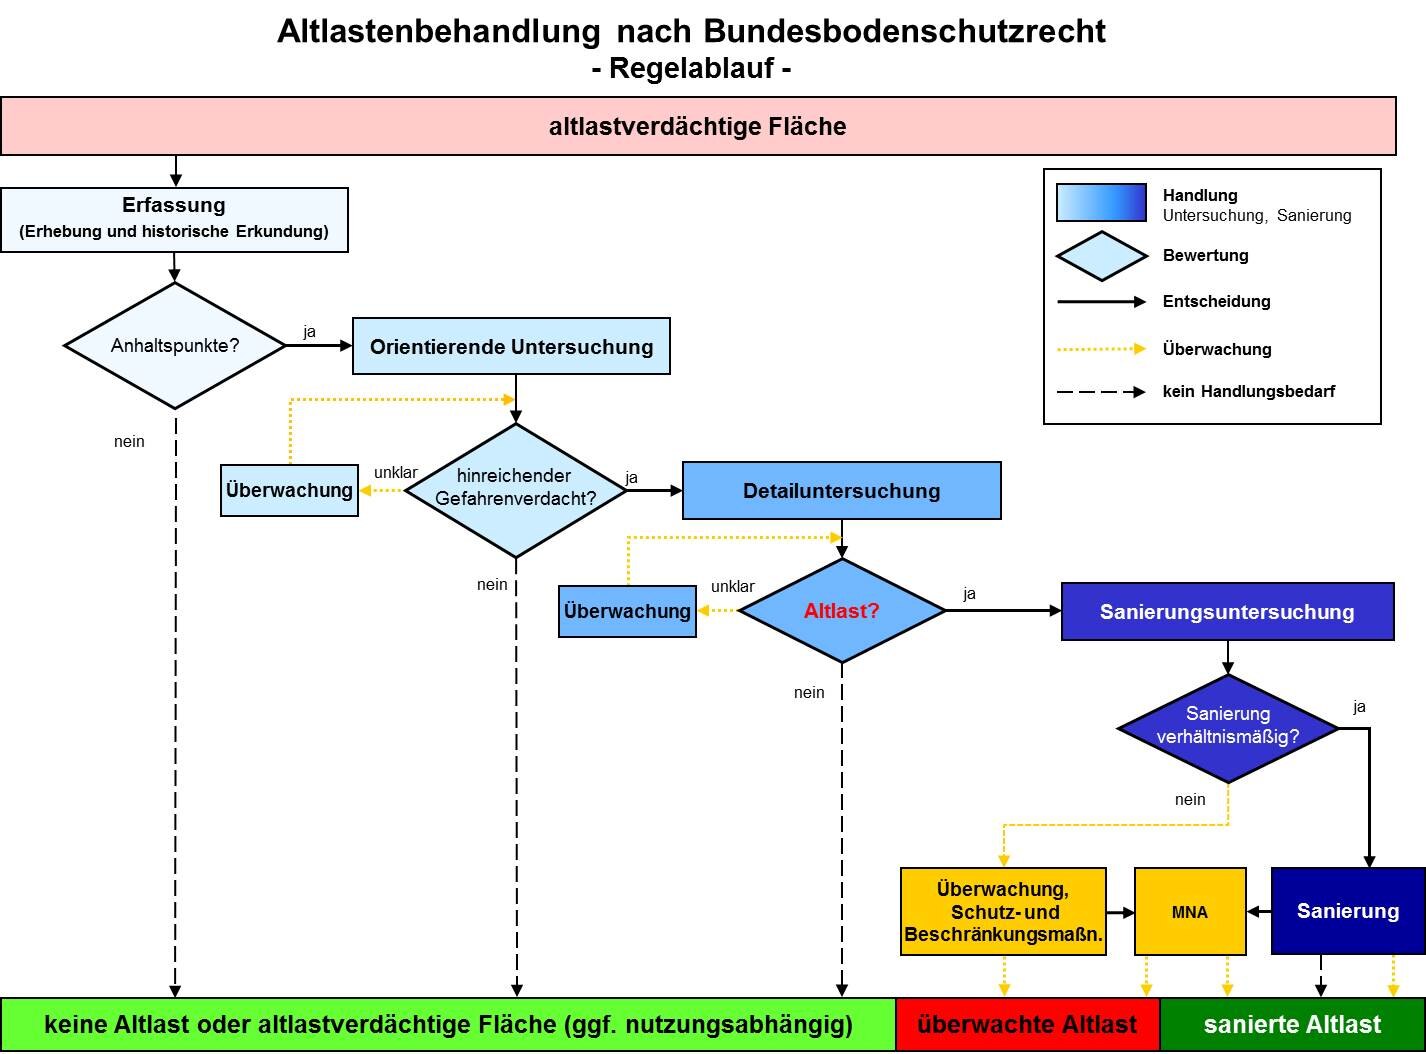 Das Bild zeigt den Regelablauf der Altlastenbehandlung nach Bundesbodenschutzrecht.